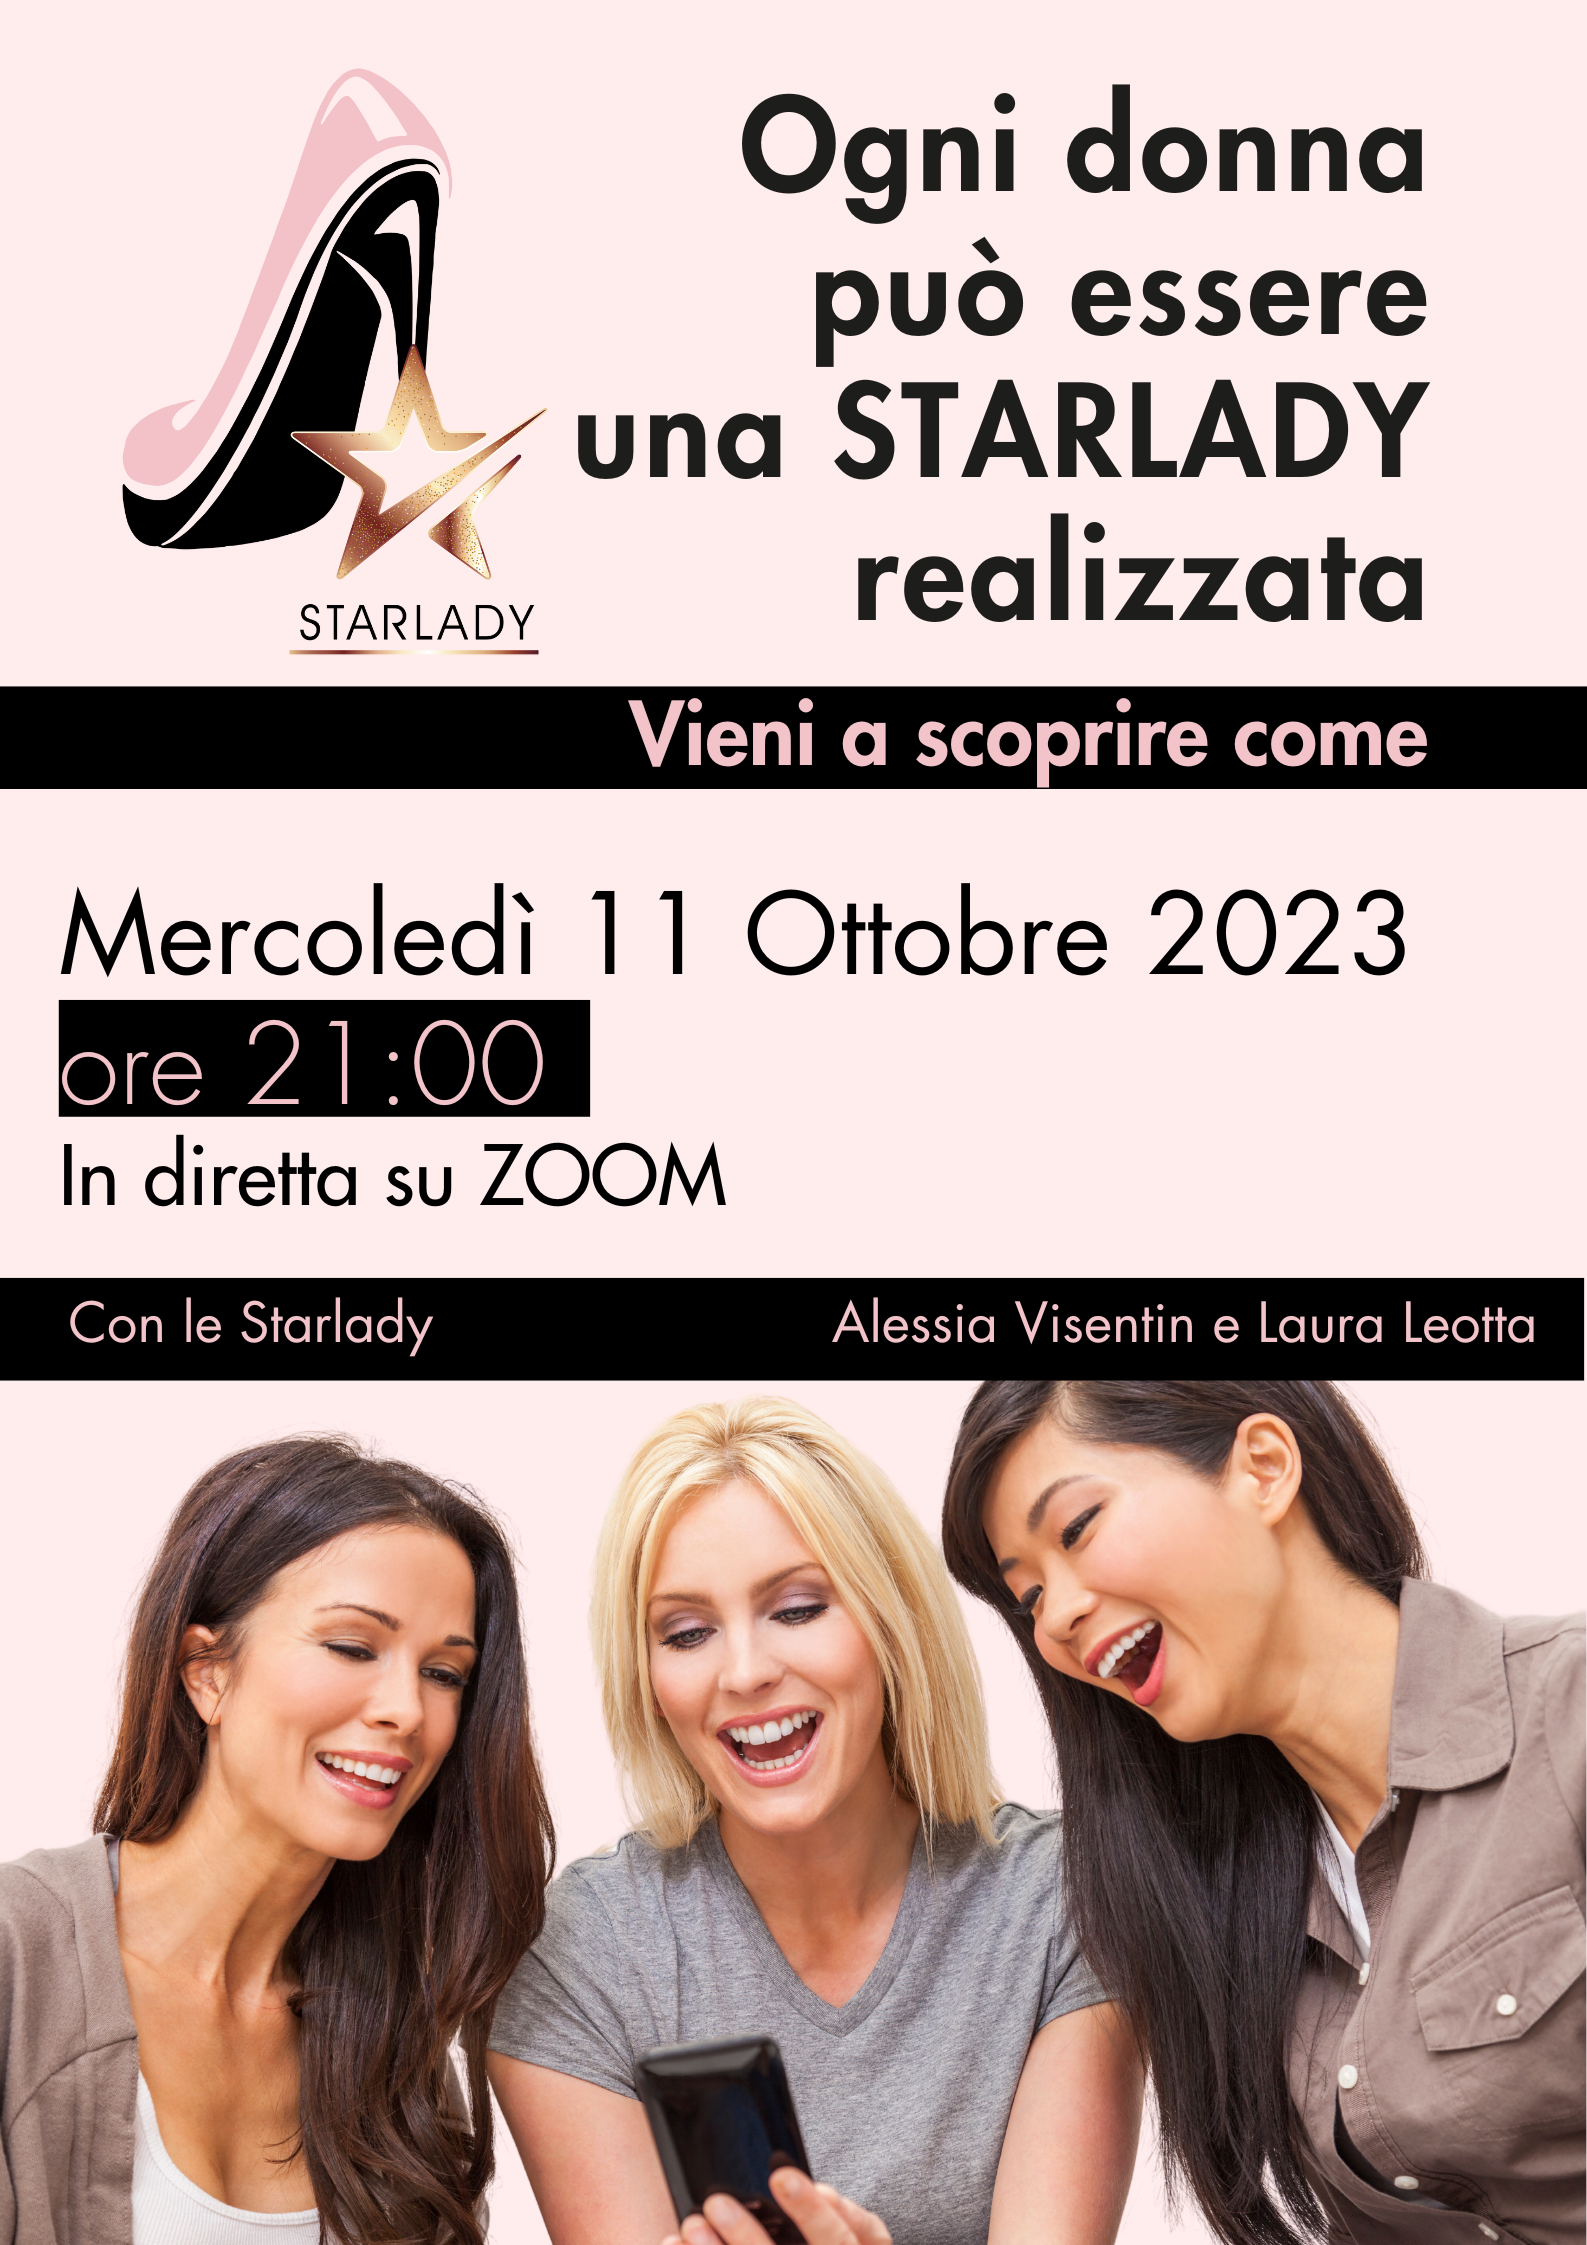 Ogni donna può essere una STARLADY realizzata - Con la Manager Monica Campaner e la Diamond Manager Alessia Visentin